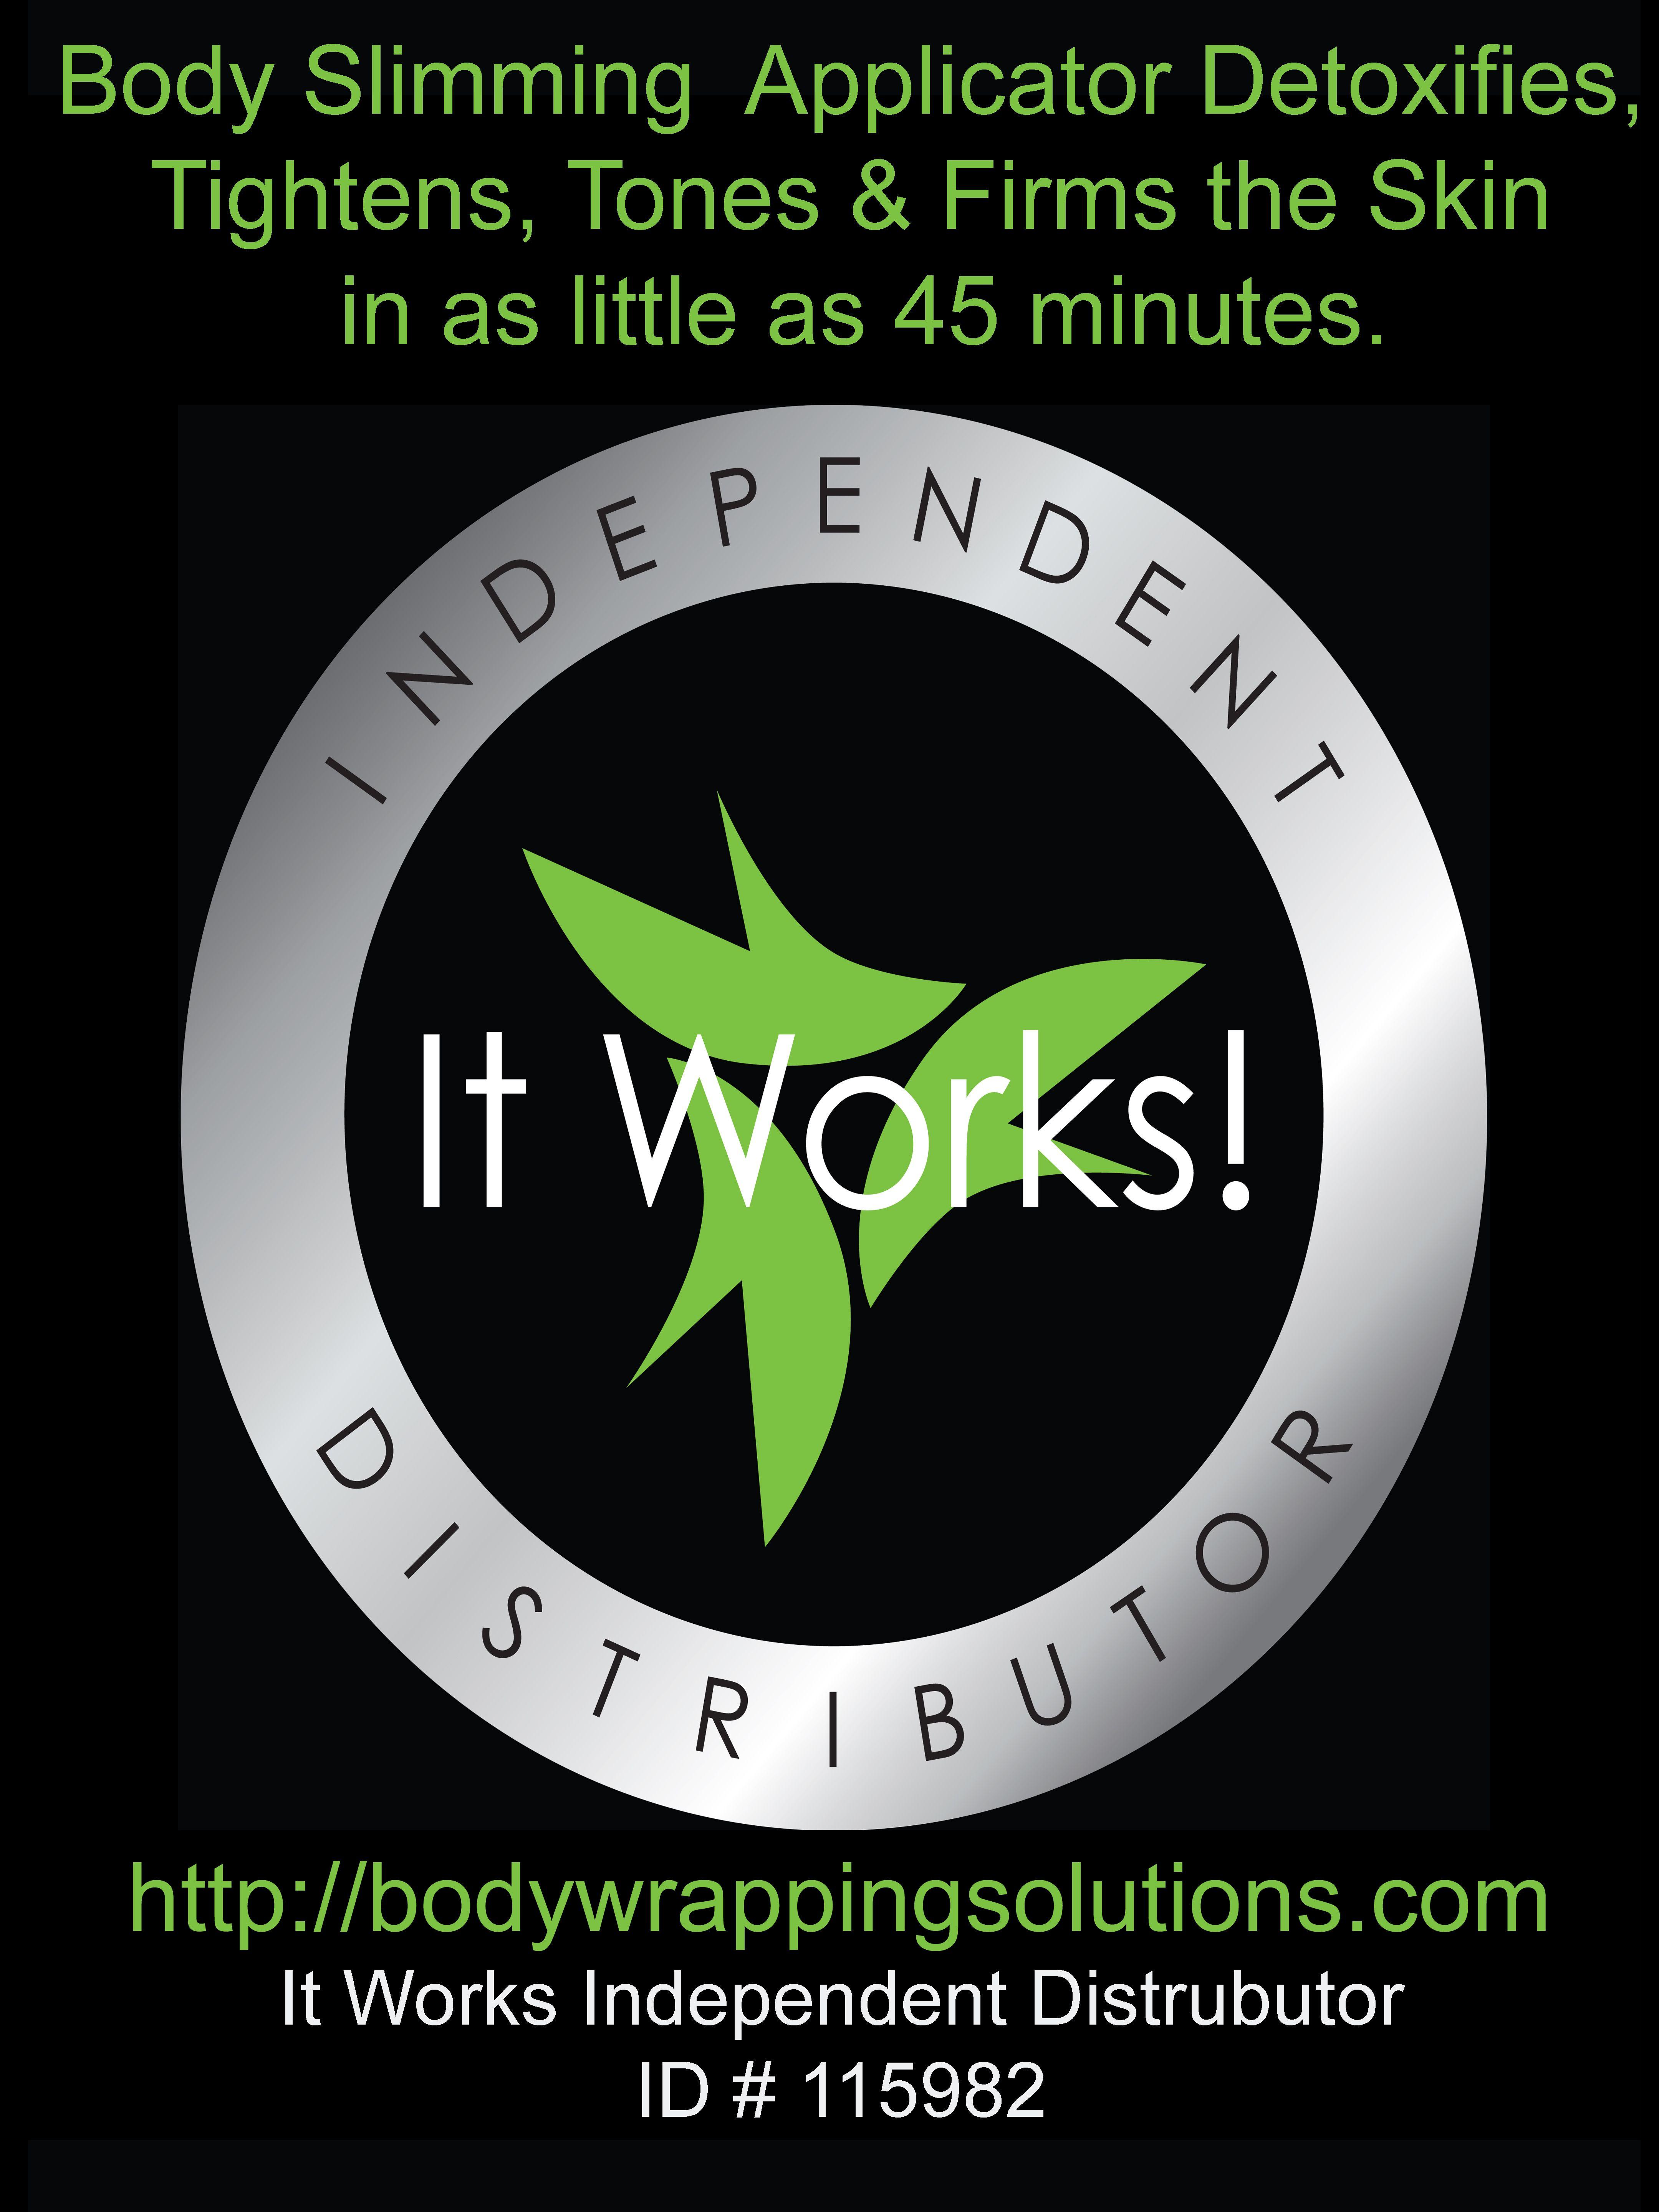 ItWorks Global Logo - Things I like. It works global